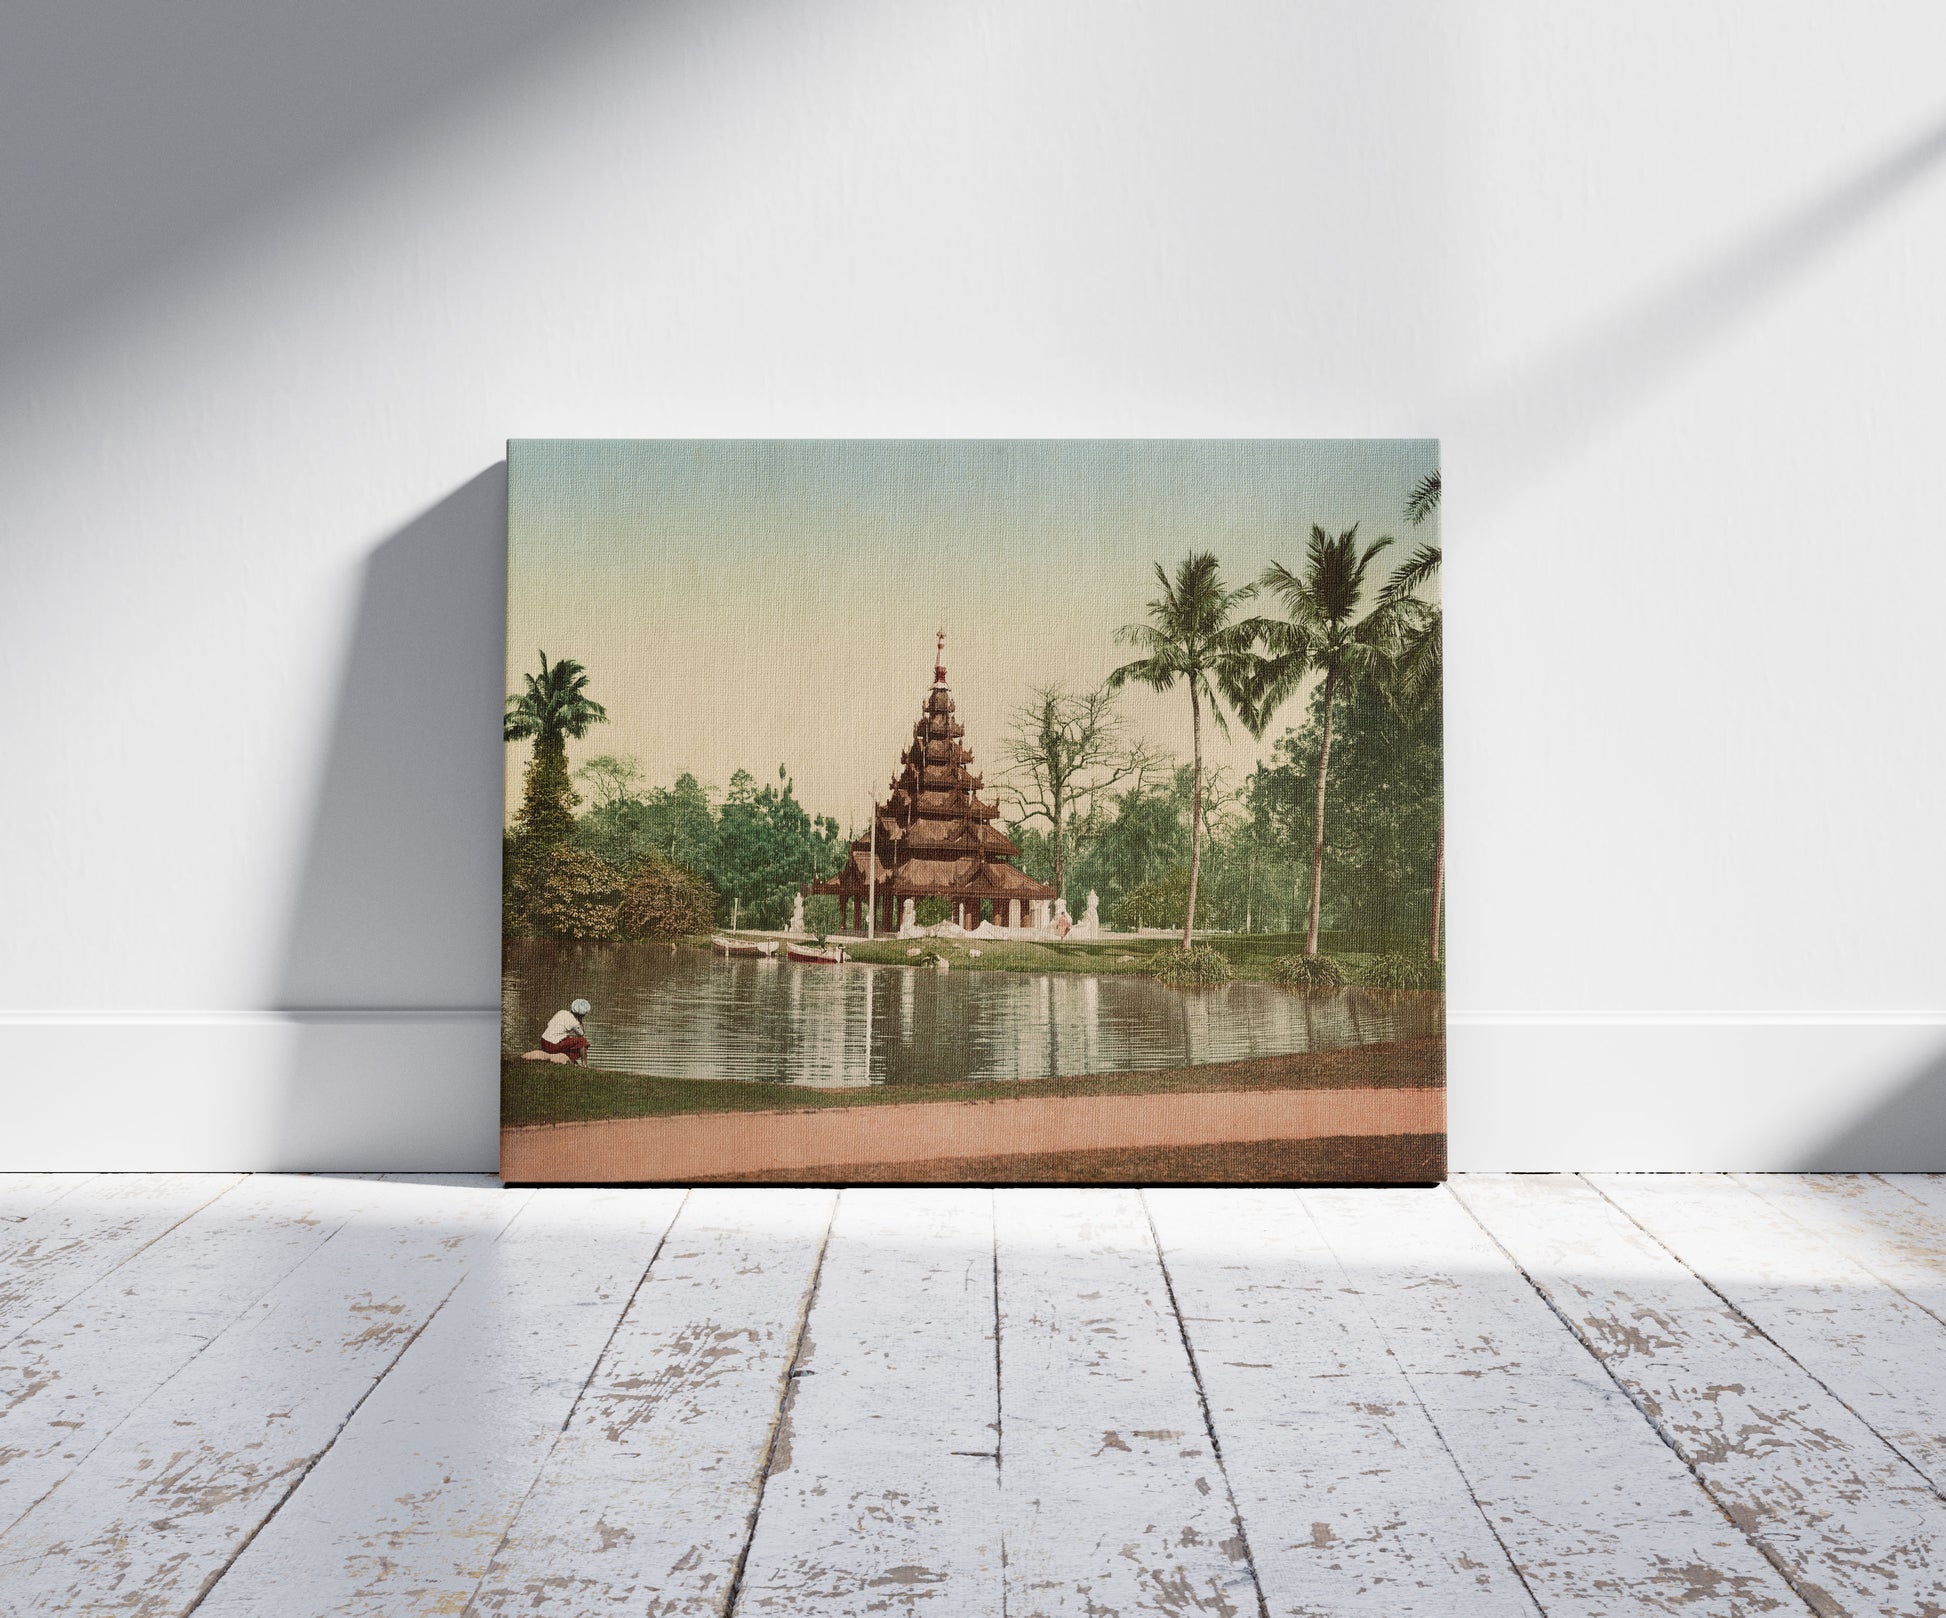 A picture of Calcutta Eden Garden with Burmese pagoda